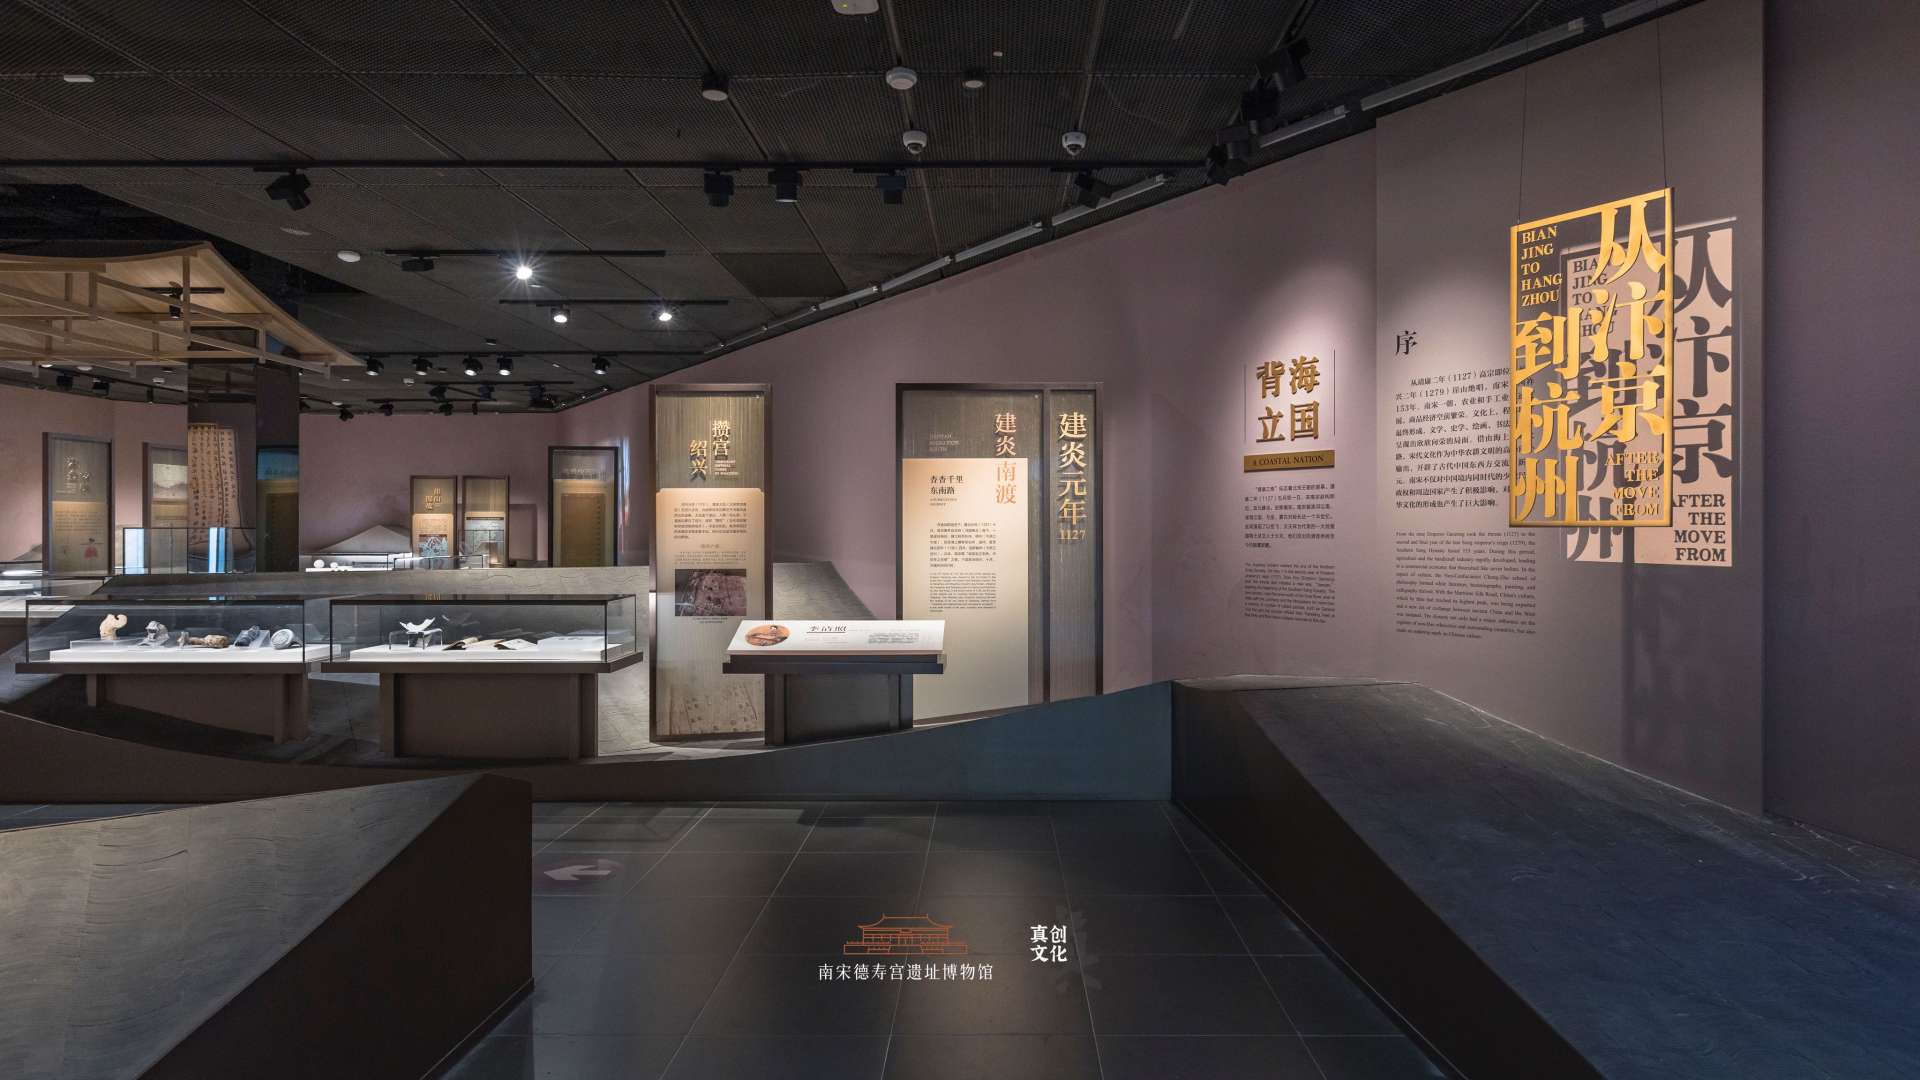 8K HDR 从汴京到杭州 南宋德寿宫遗址博物馆常设展 展陈空间展示